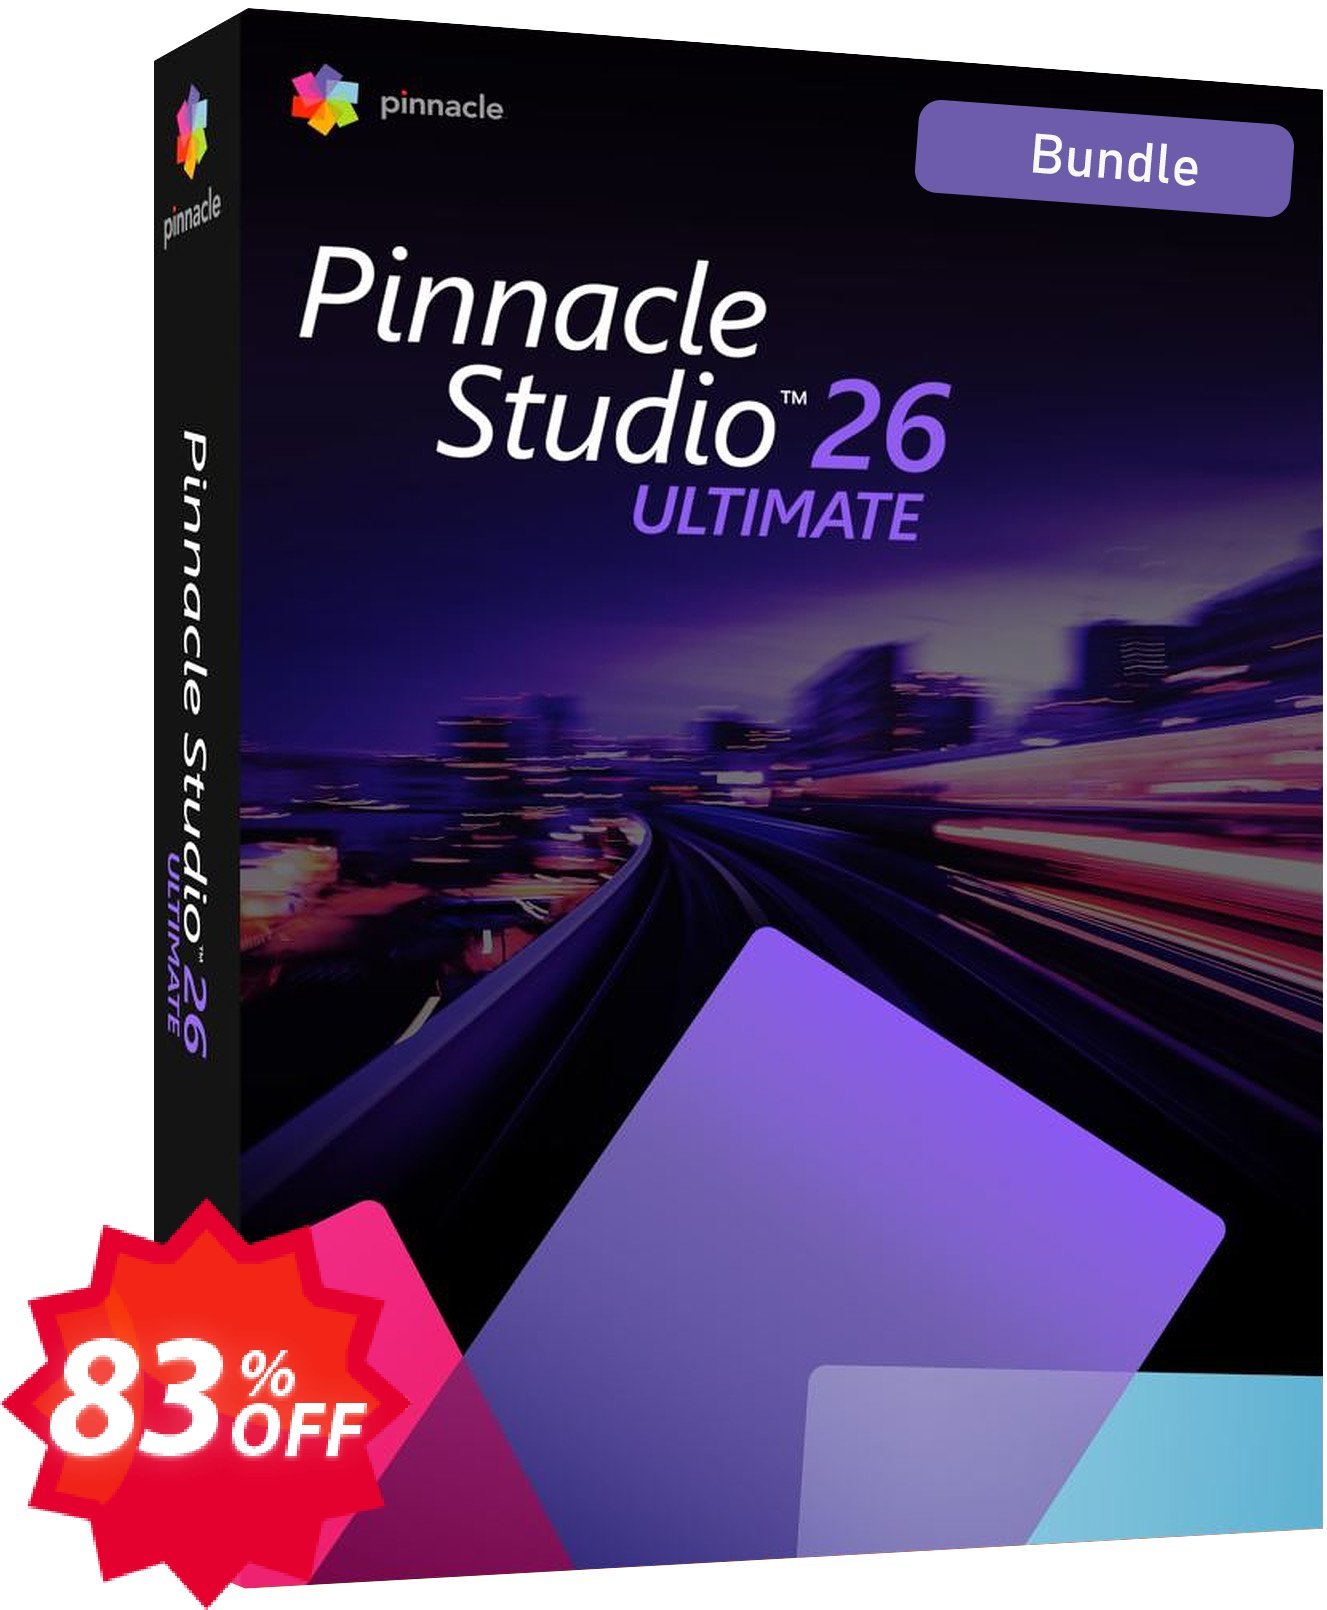 Pinnacle Studio 26 Ultimate Bundle Coupon code 83% discount 